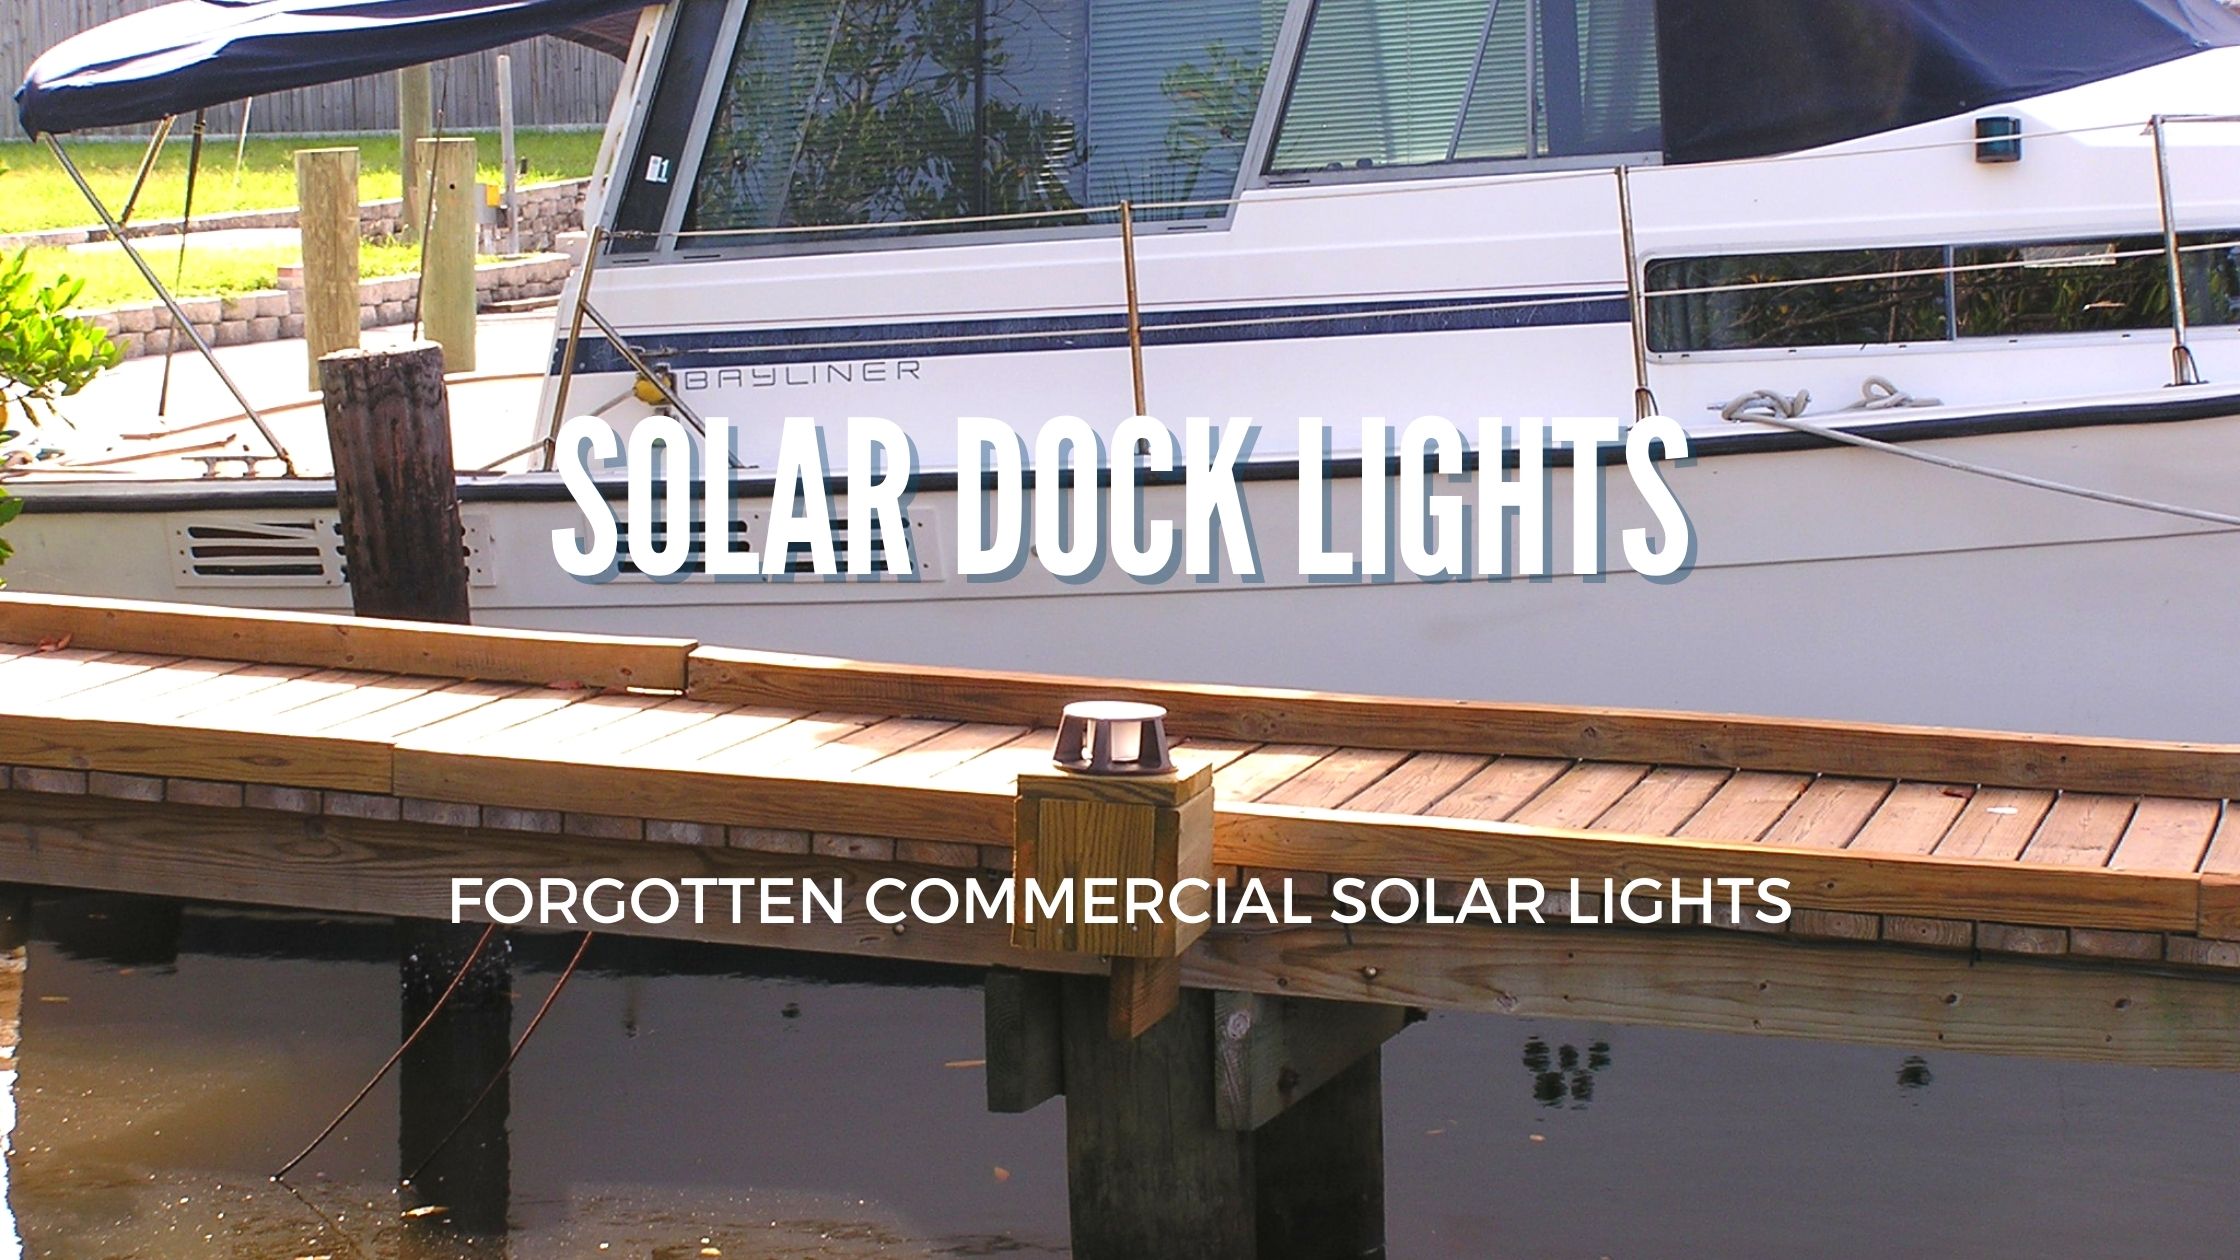 Solar Dock Lights Forgotten Commercial Solar Lights